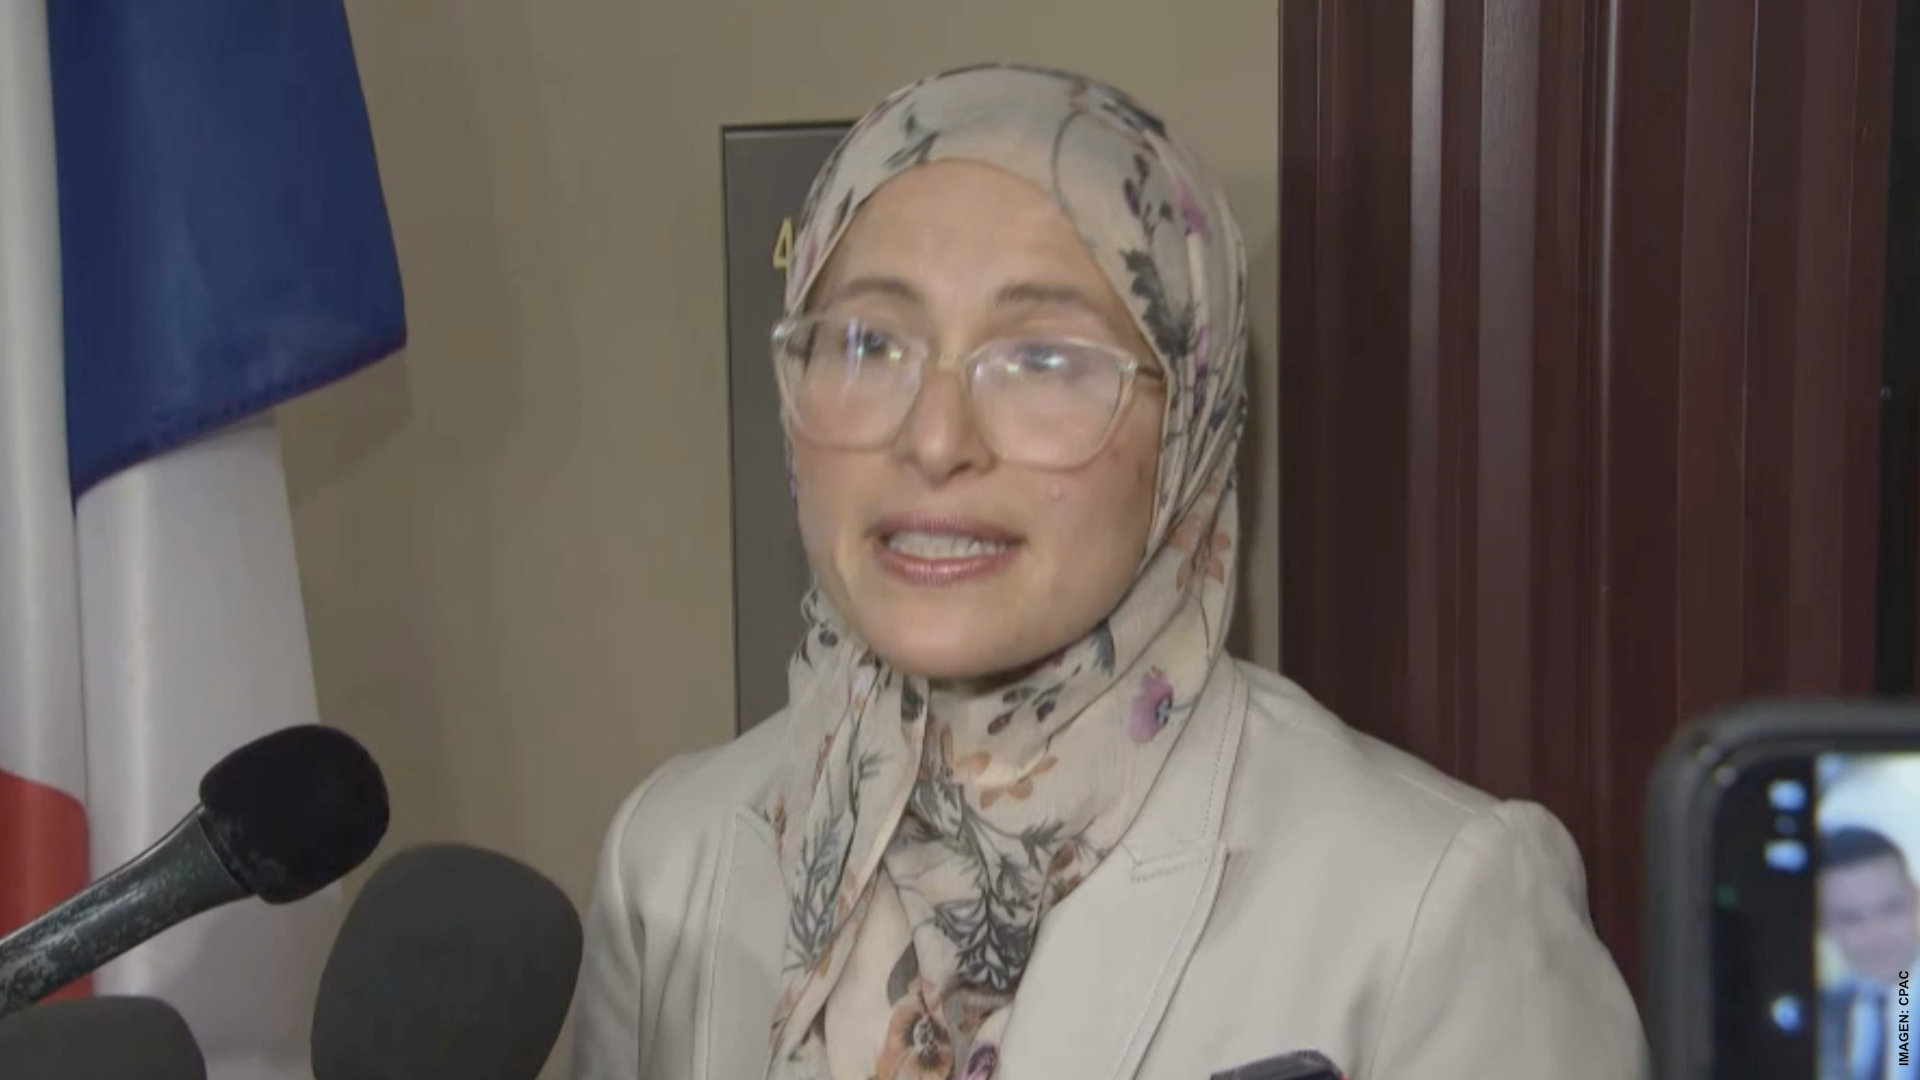 Quebec rechaza a representante contra islamofobia